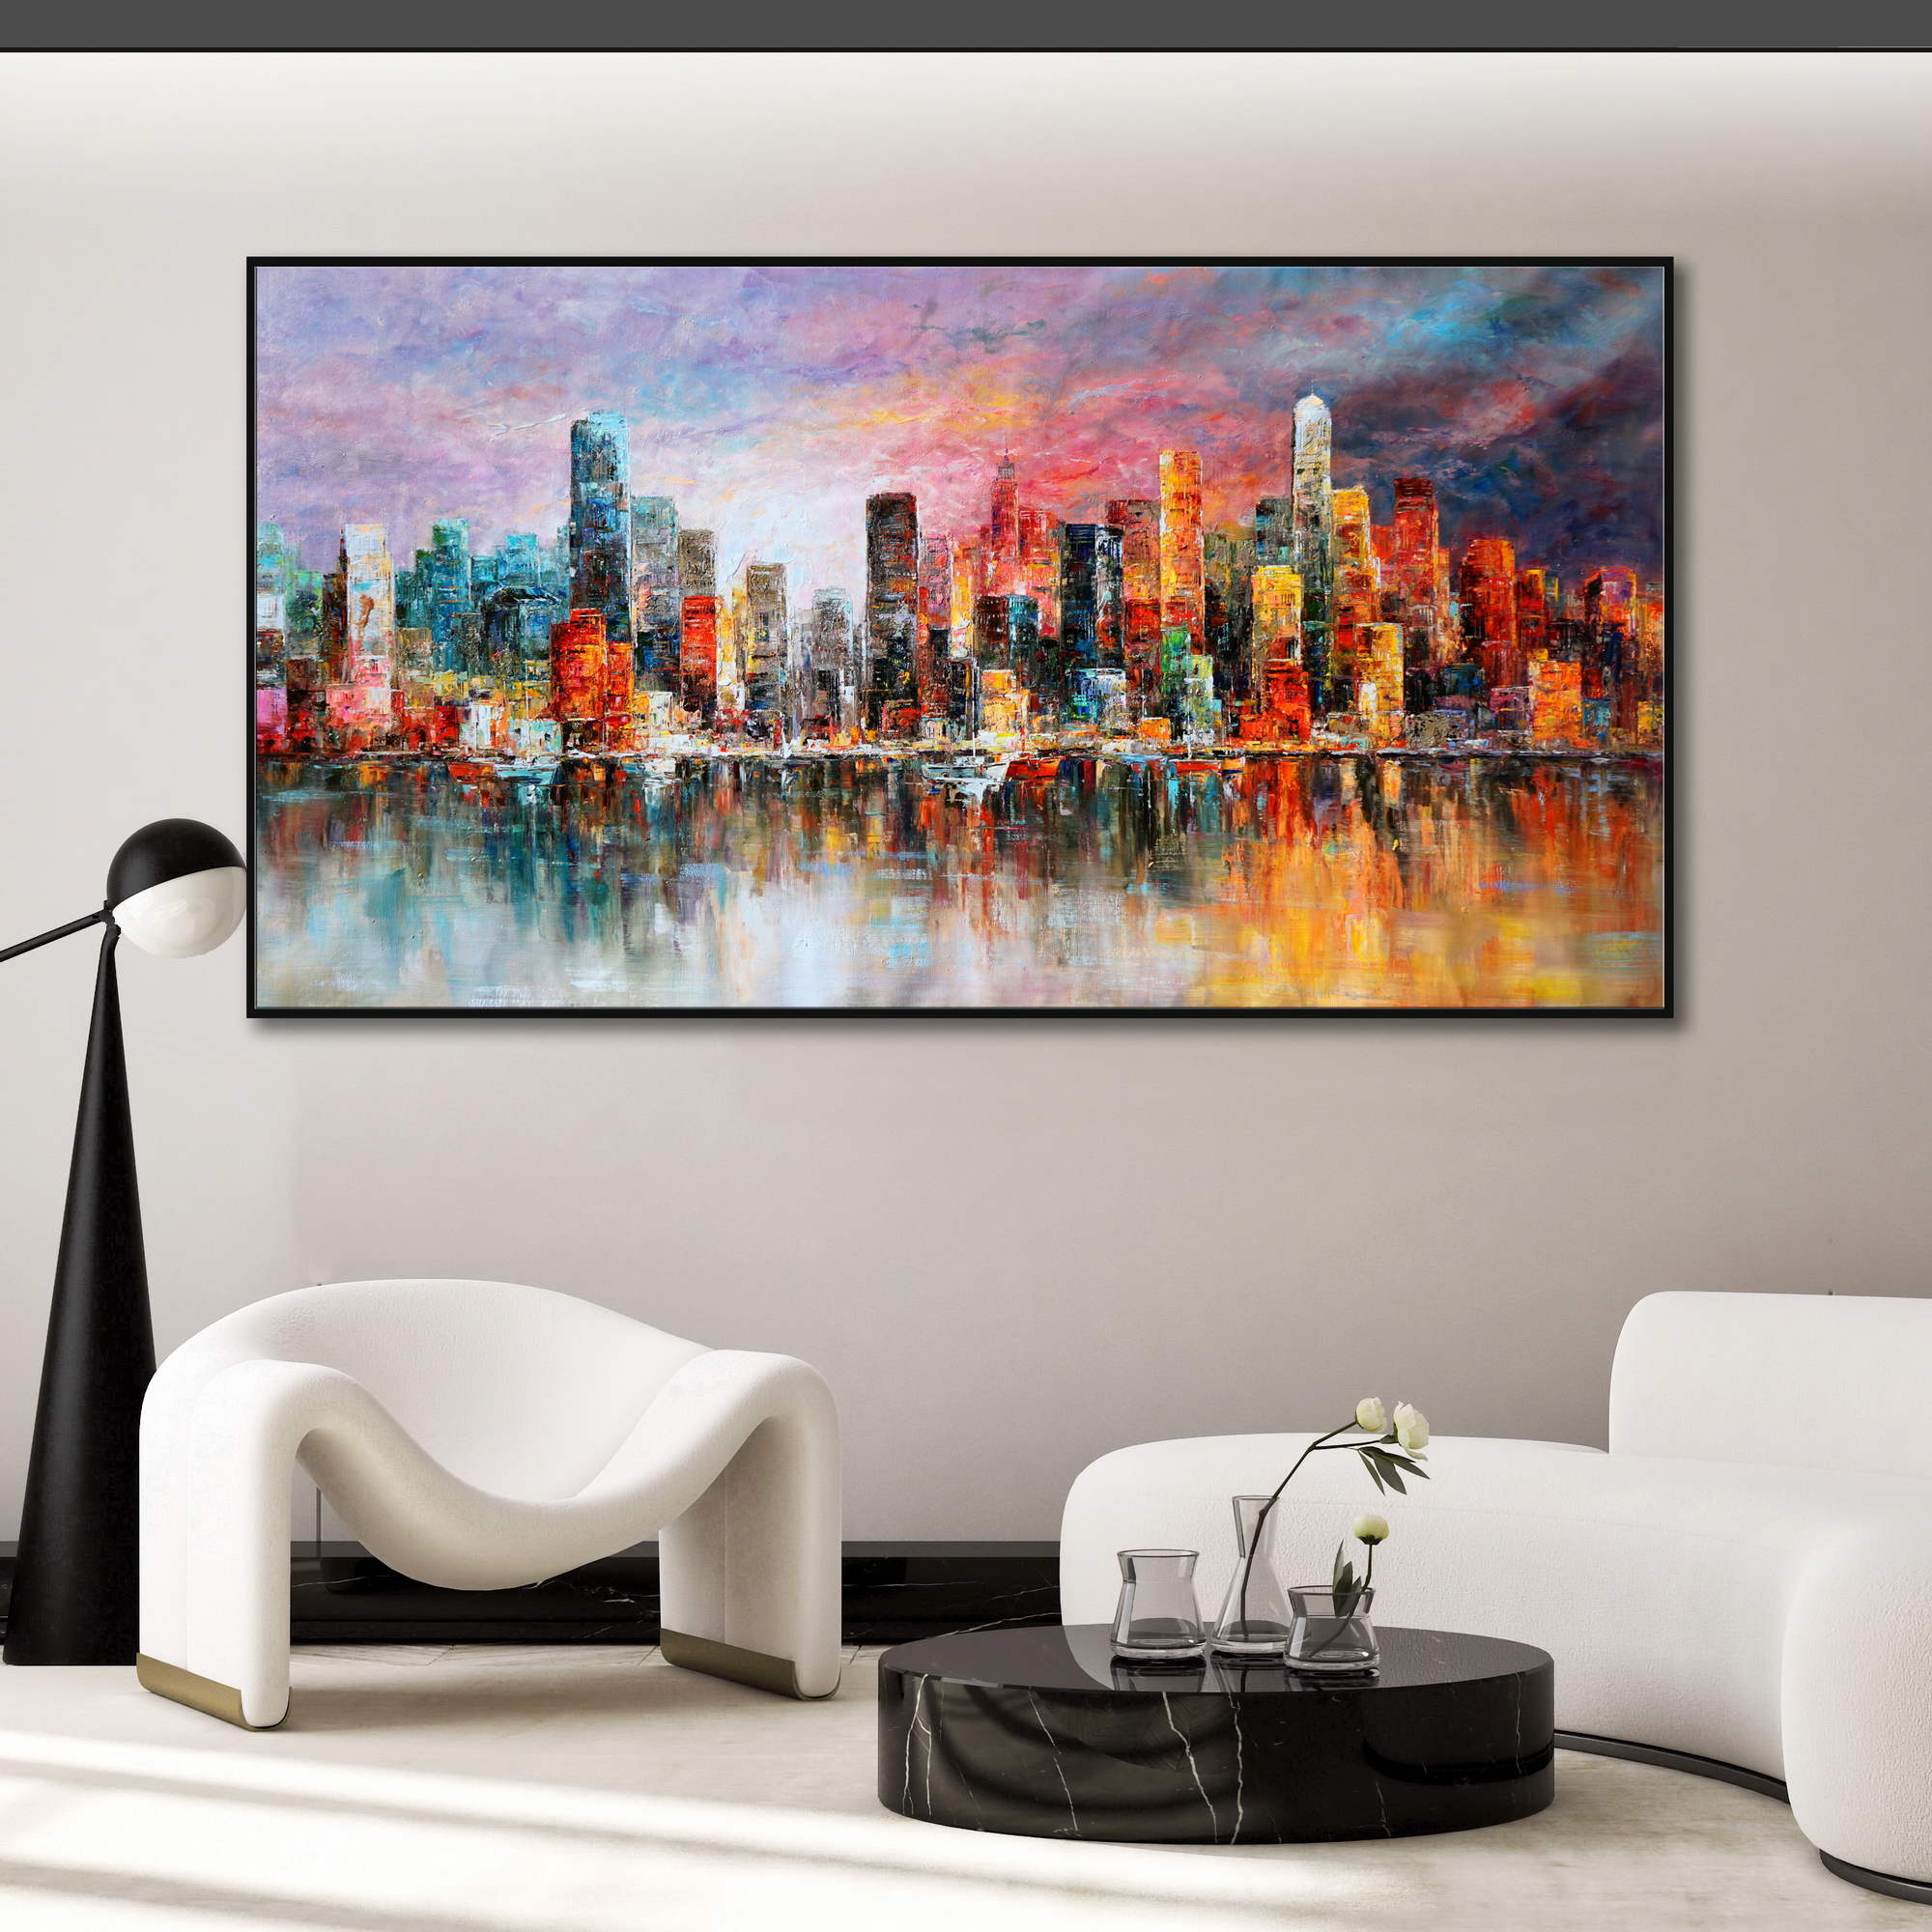 Dipinto impressionista di New York con i suoi grattacieli che si riflettono sull'acqua